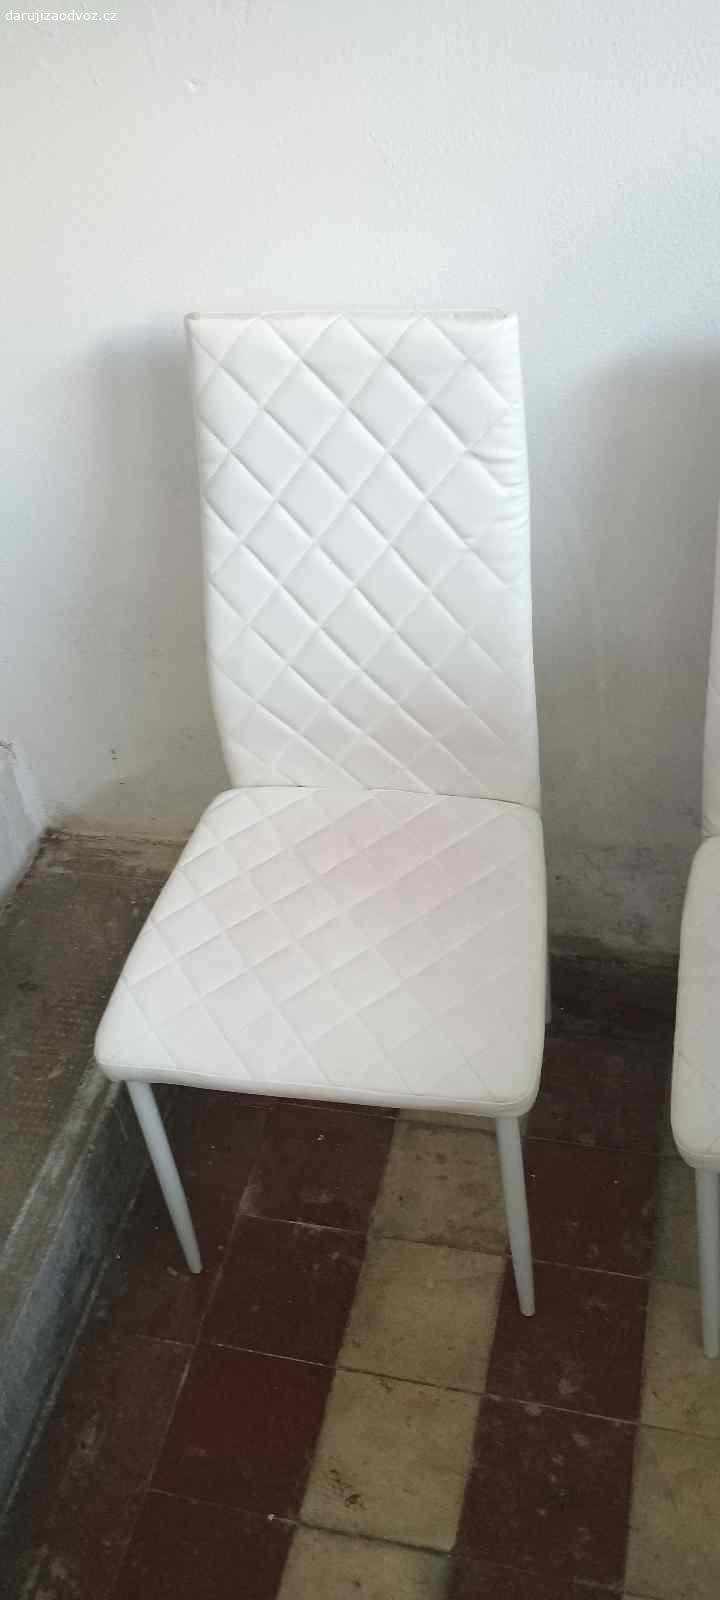 2ks bílých jídelních židlí. Daruji 2ks bílých jídelních židlí z ekokůže - https://www.asko-nabytek.cz/4583709.1-jidelni-zidle-rimini-bila-ekokuze

Jedna je lehce znečištěná od červených šatů (viz foto), možná půjde vyčistit.